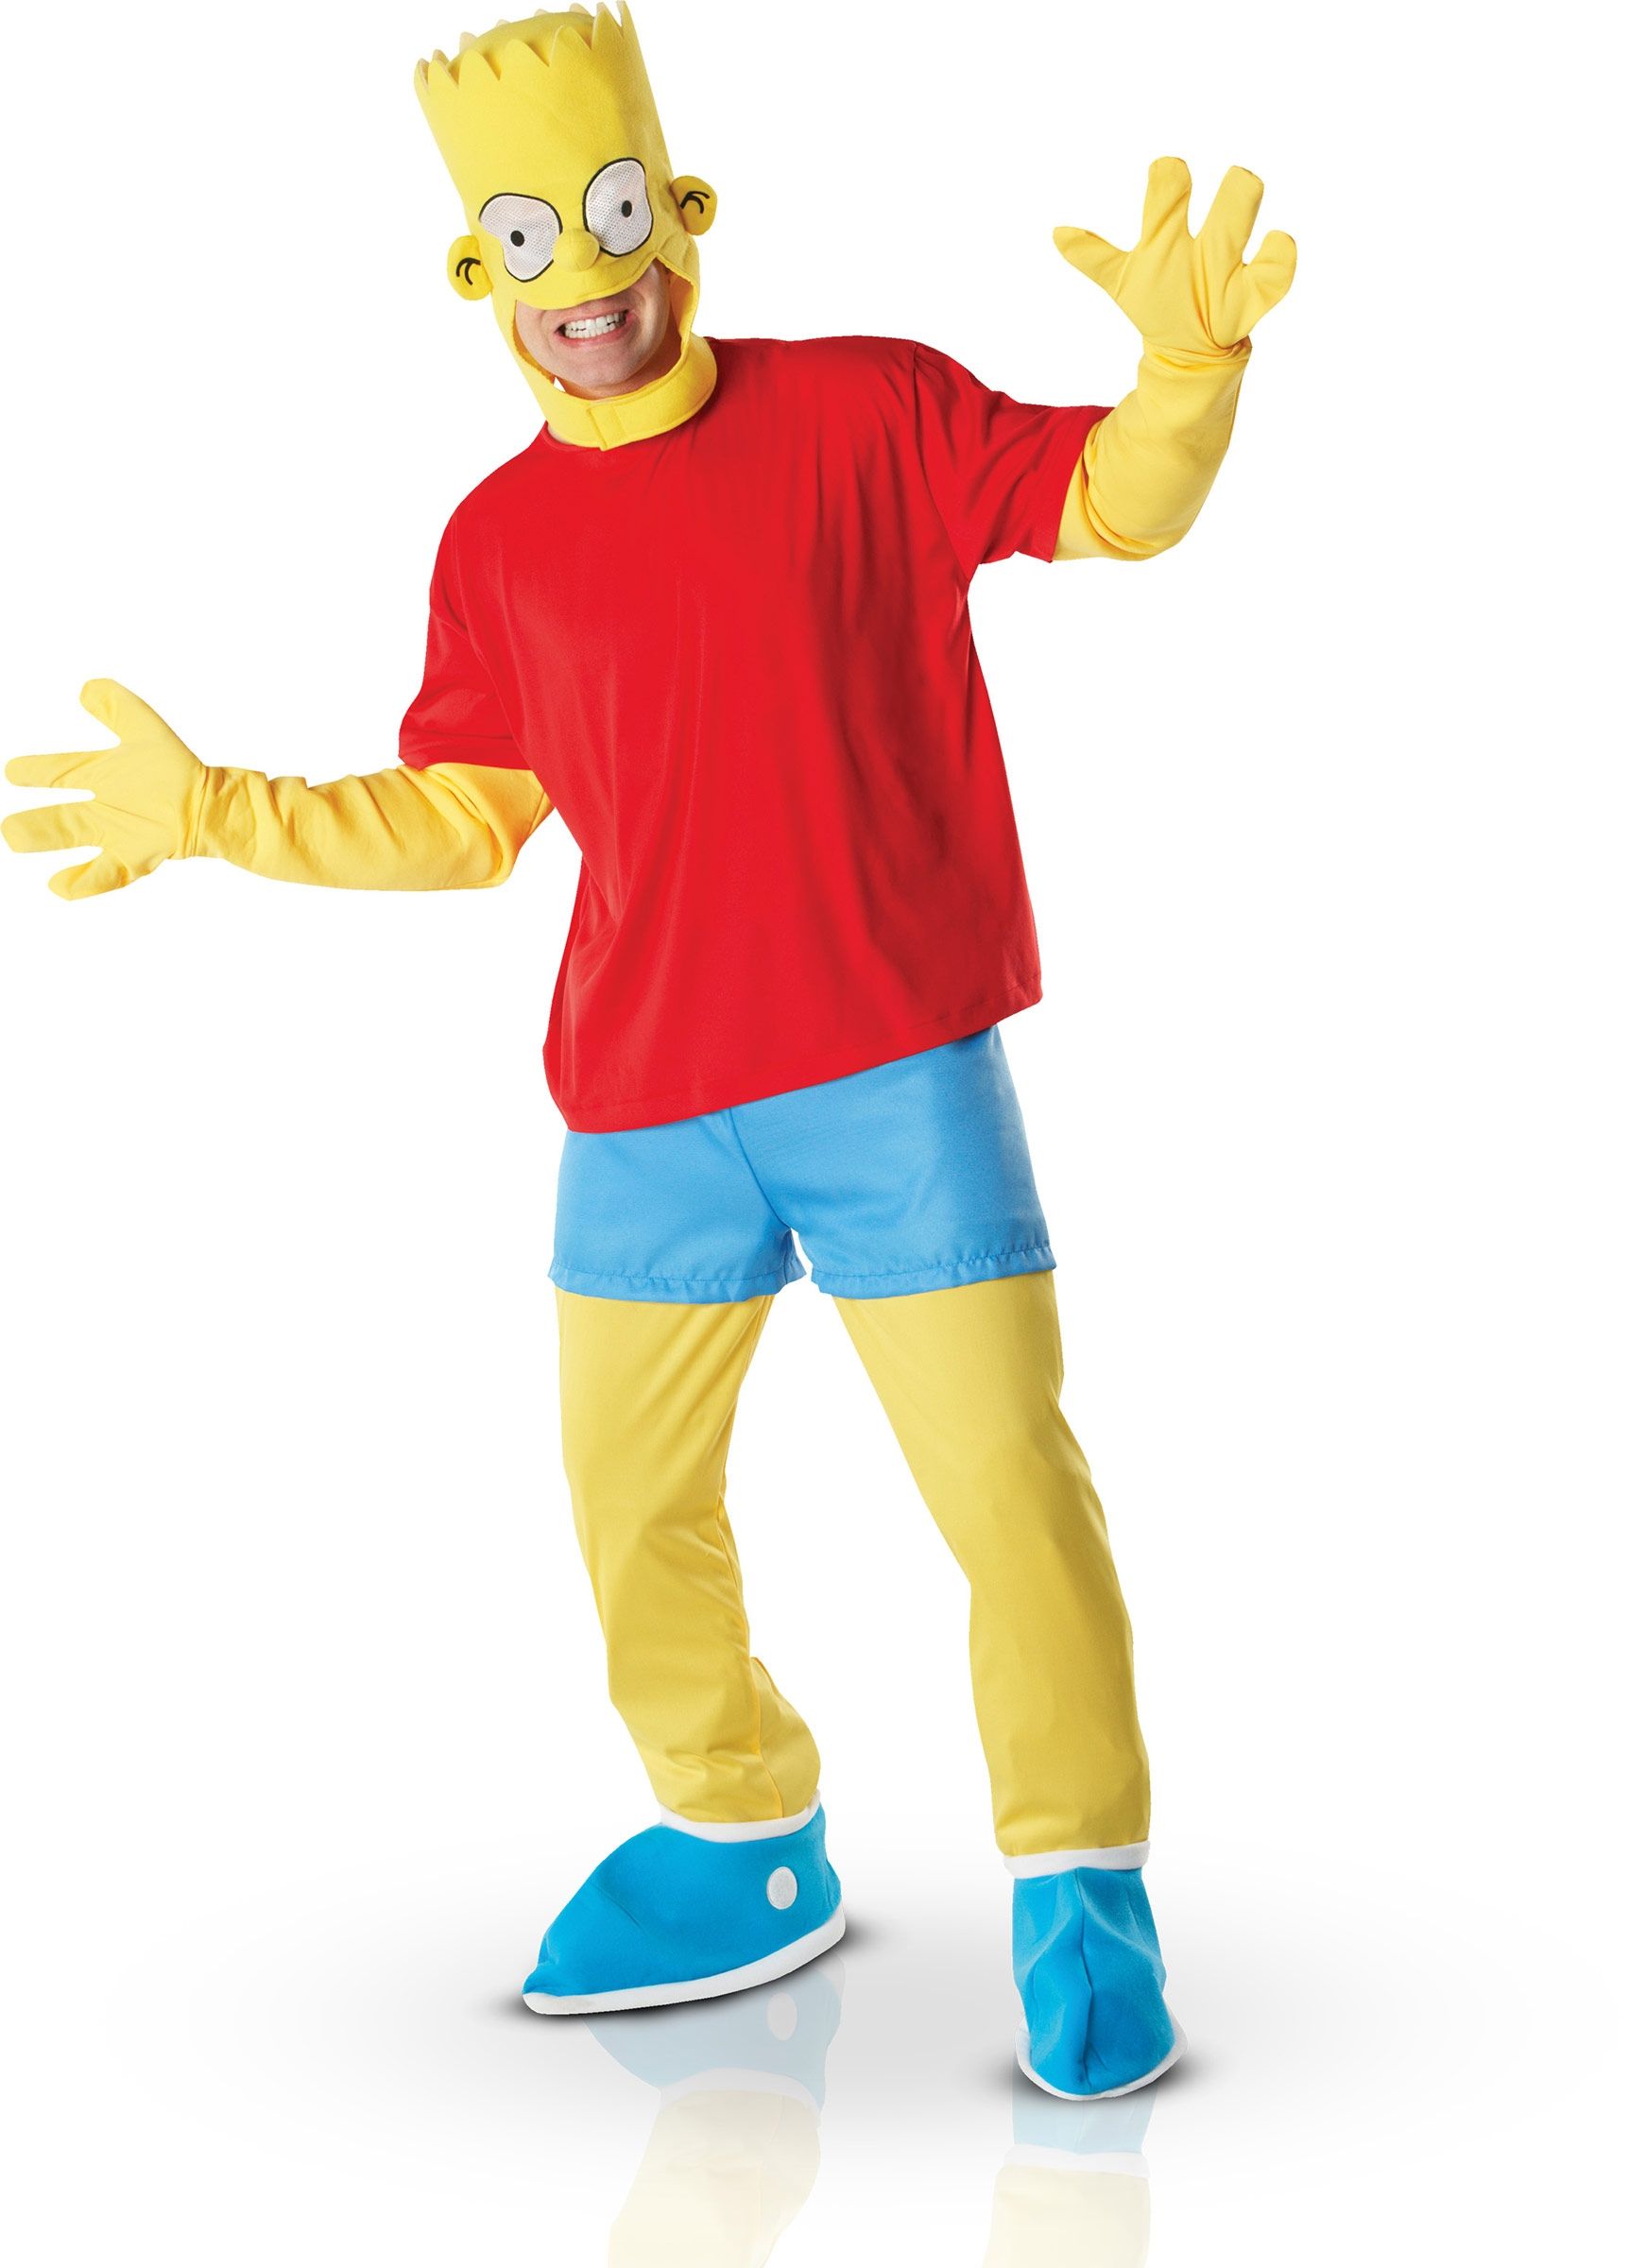 Костюм Барта Симпсона Dlx включает в себя красную футболку с желтыми рукава...